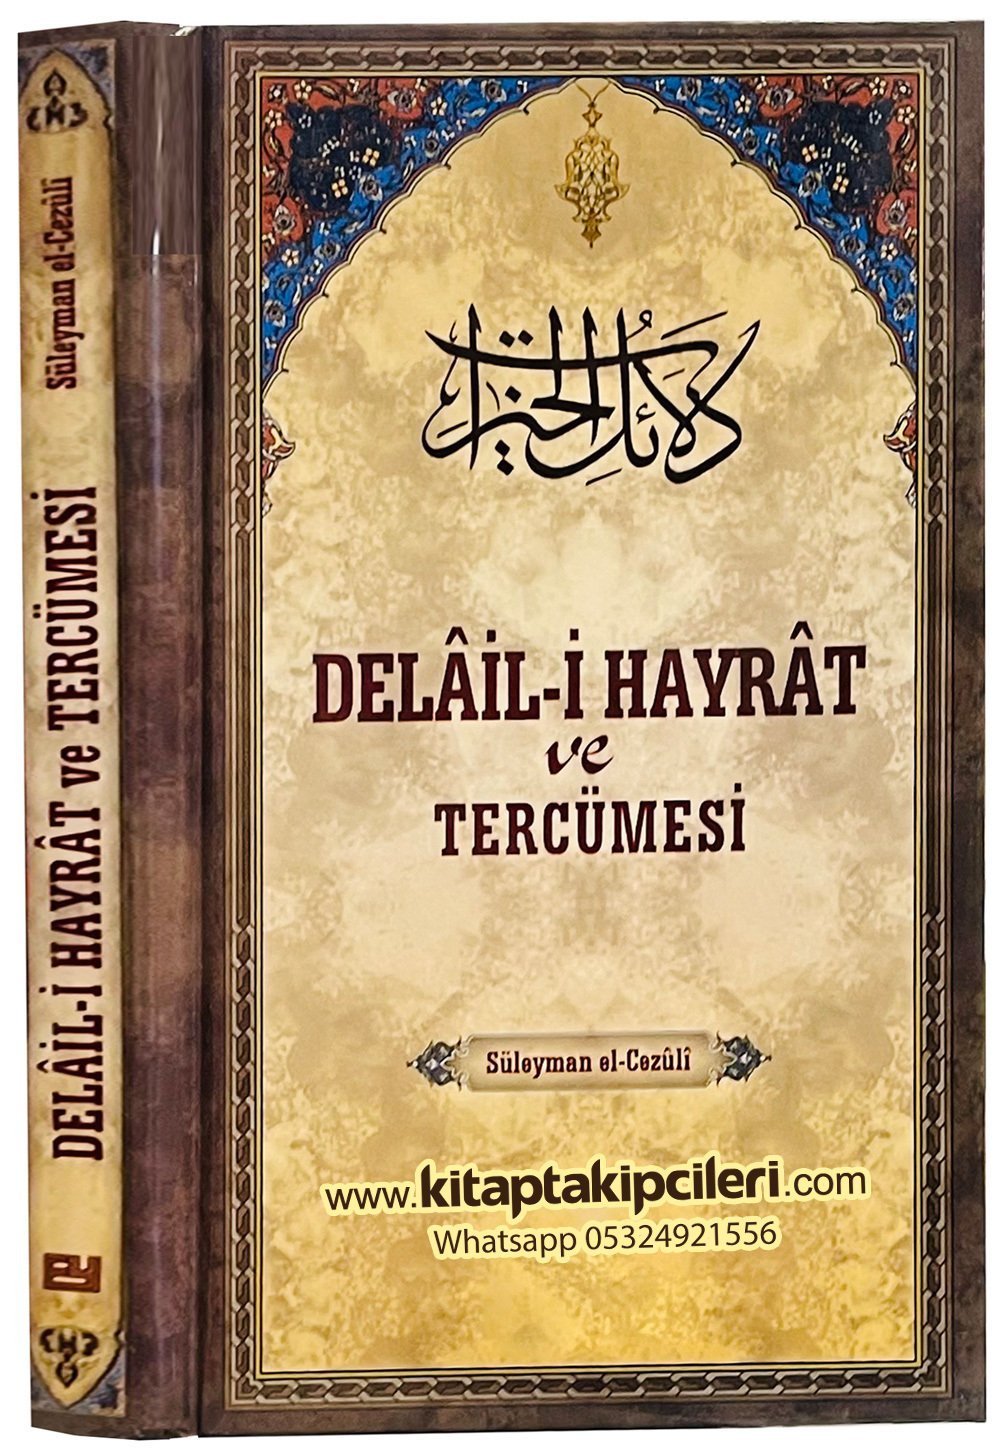 Delaili Hayrat Ve Tercümesi, Arapça Ve Türkçe Meali, Süleyman El Cezuli, 240 Sayfa